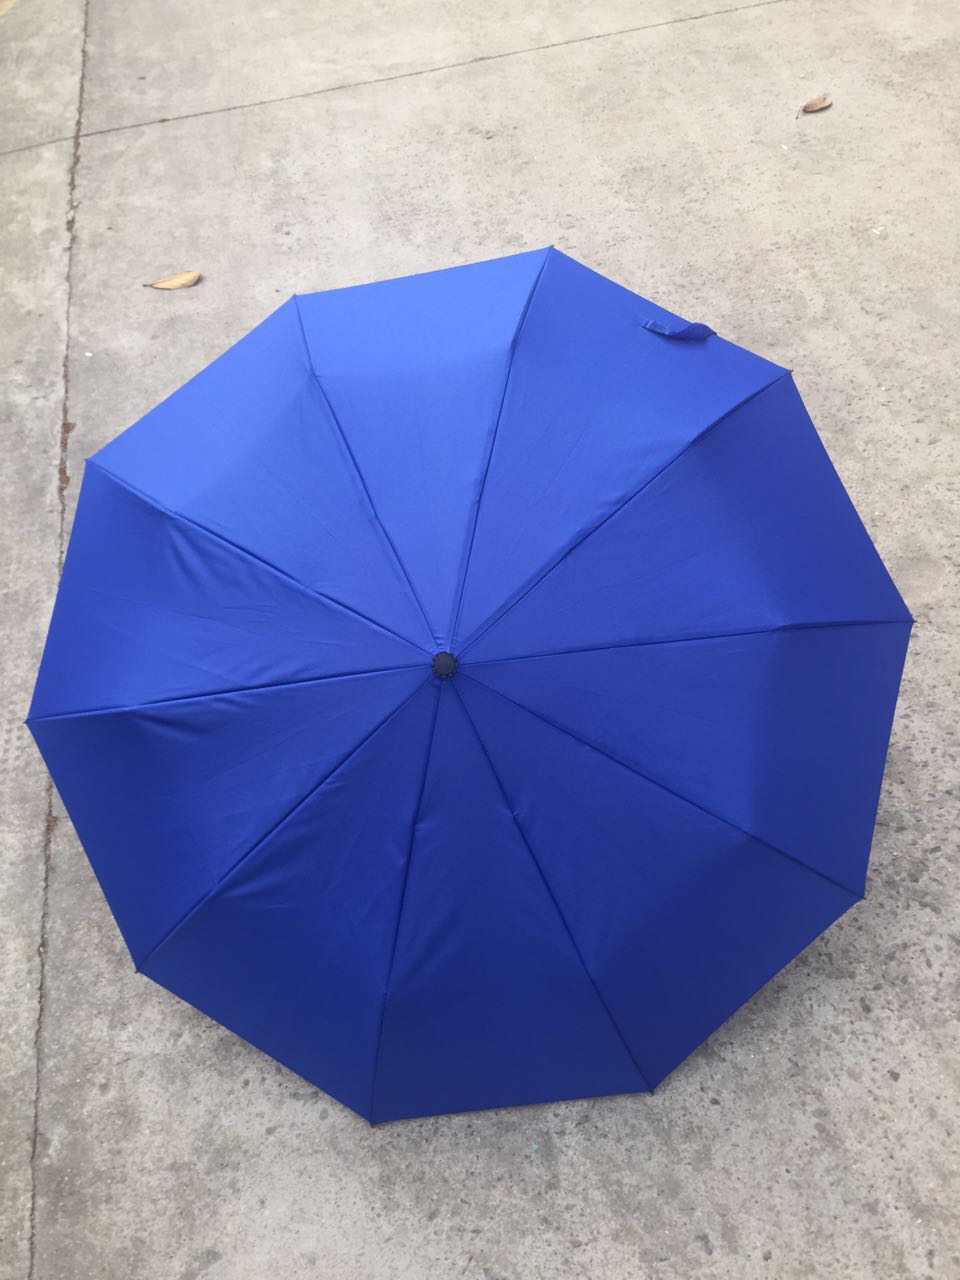 加印logo现货批发 全自动晴雨伞 玻纤超强抗风伞架3